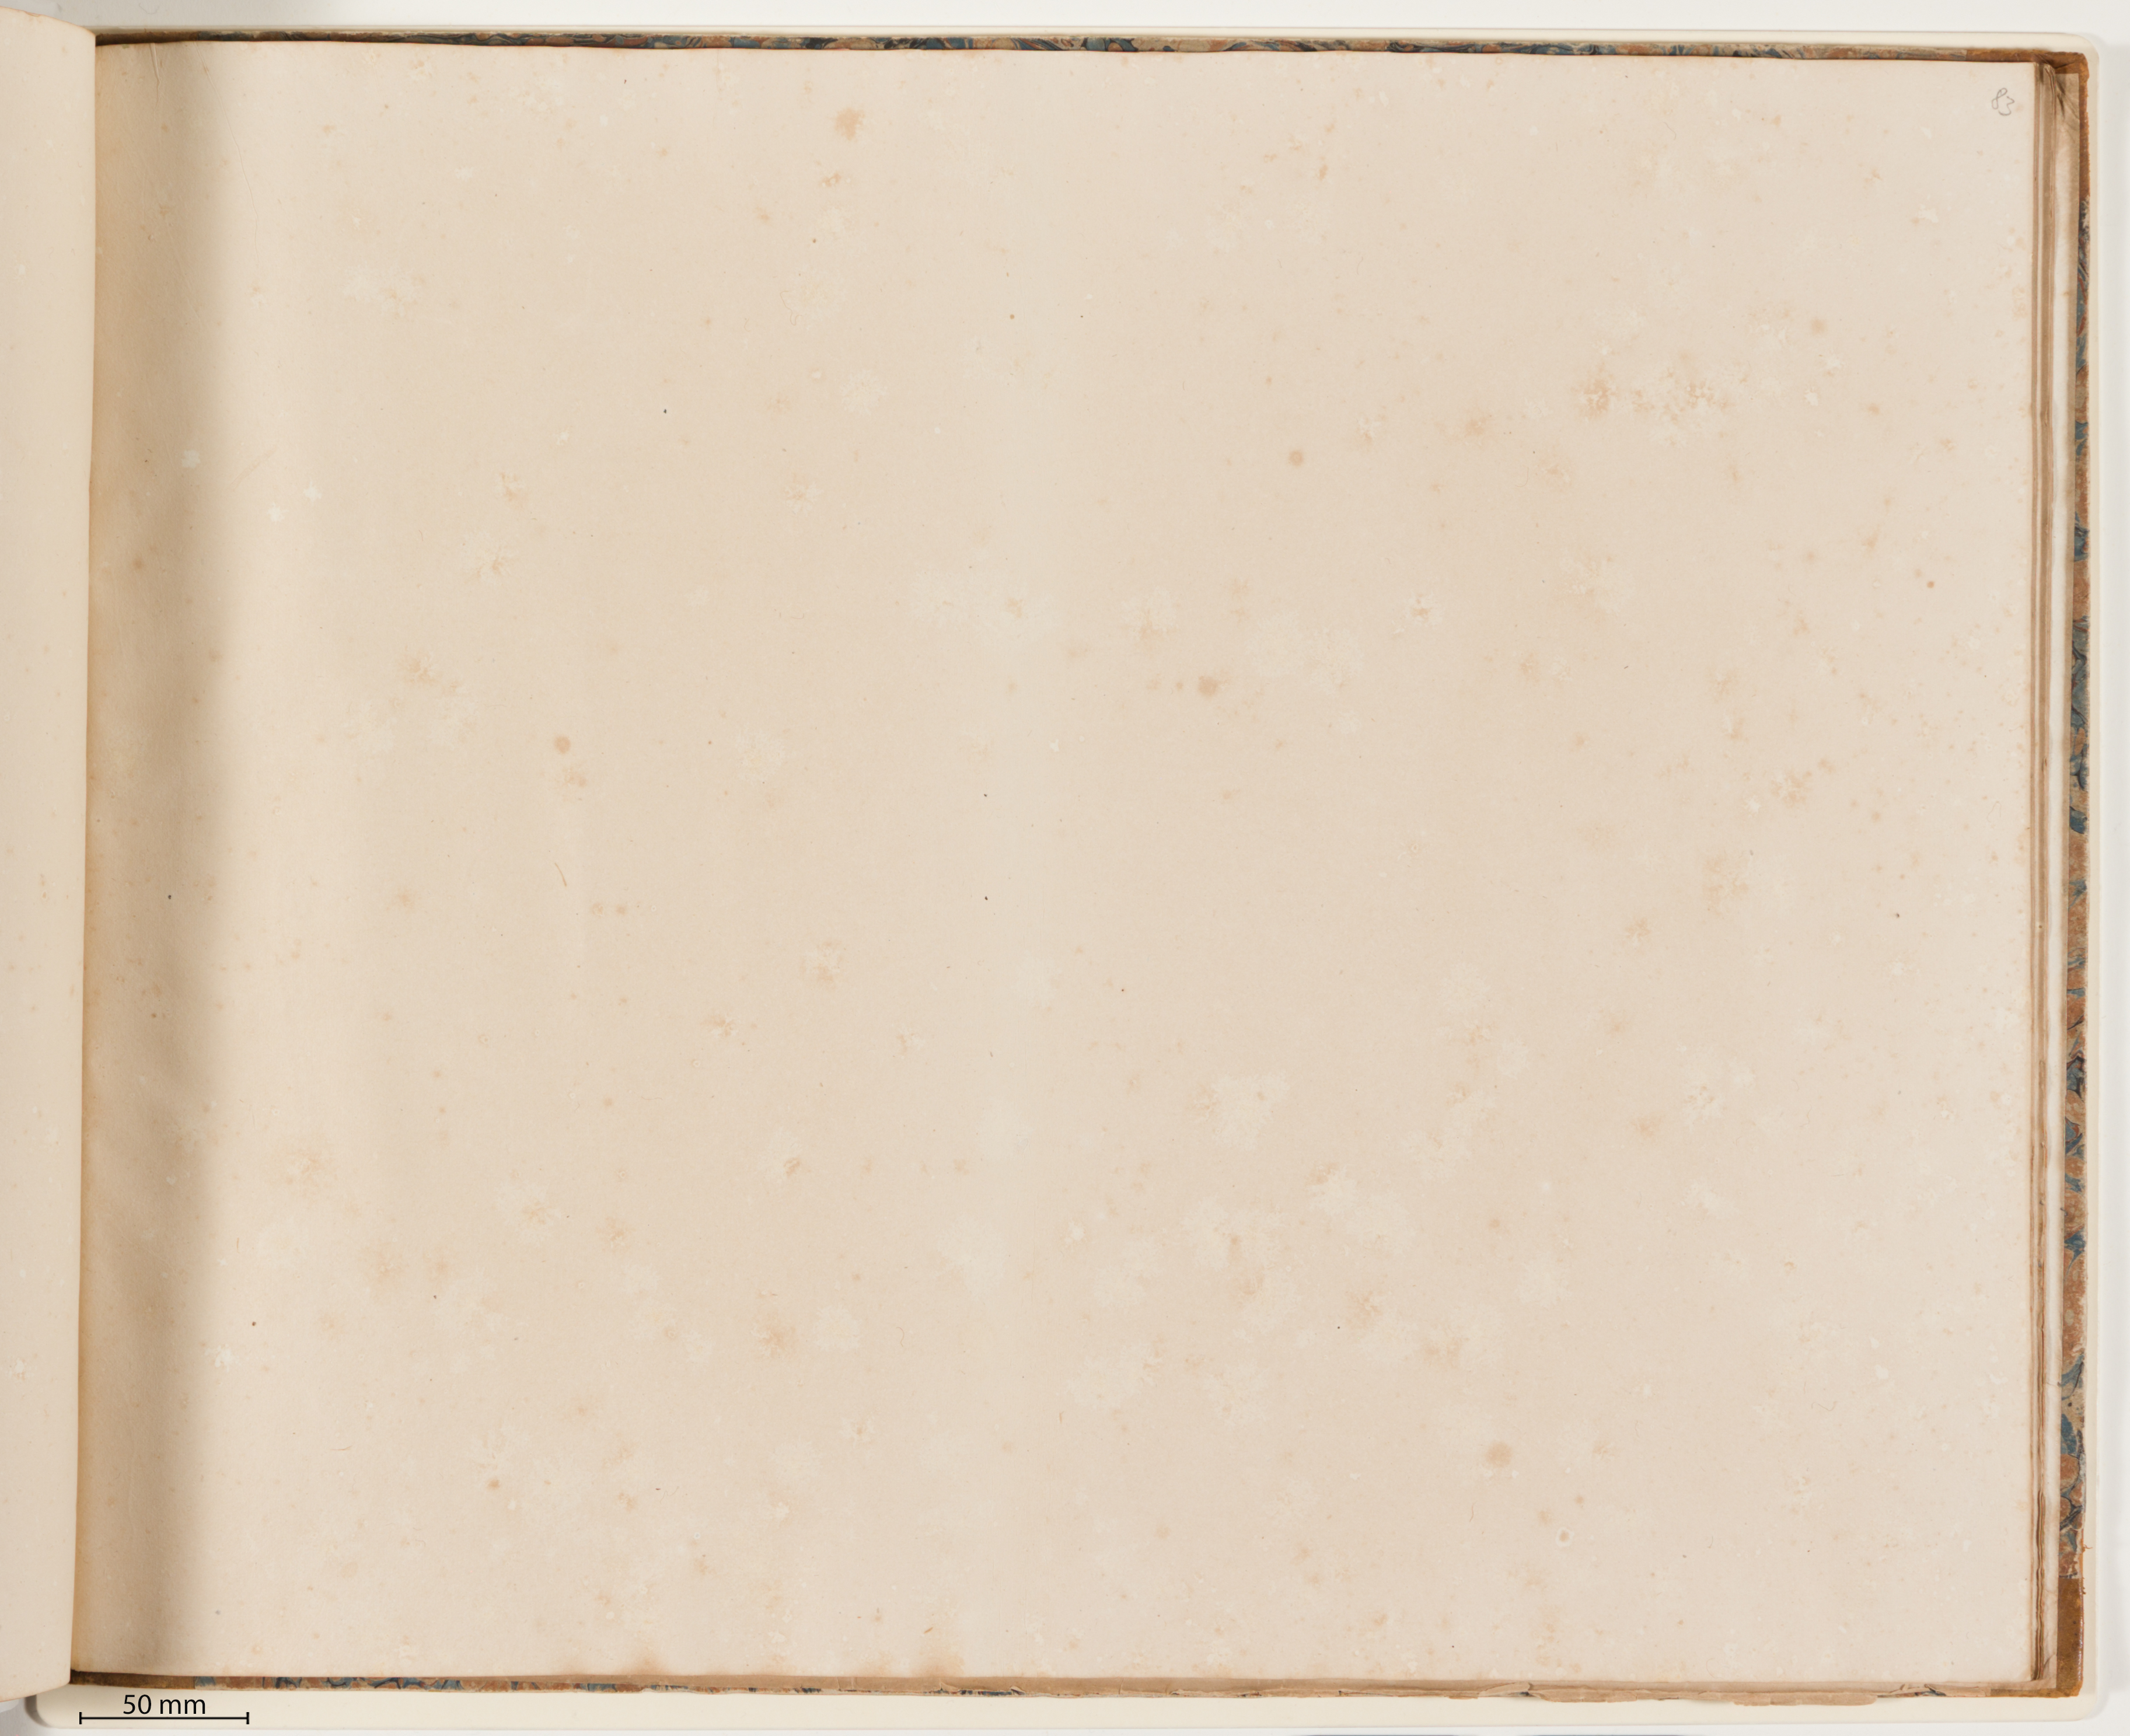 Dreiundachtzigstes Blatt aus Klebeband 1, Auflichtaufnahme des Leerblatts